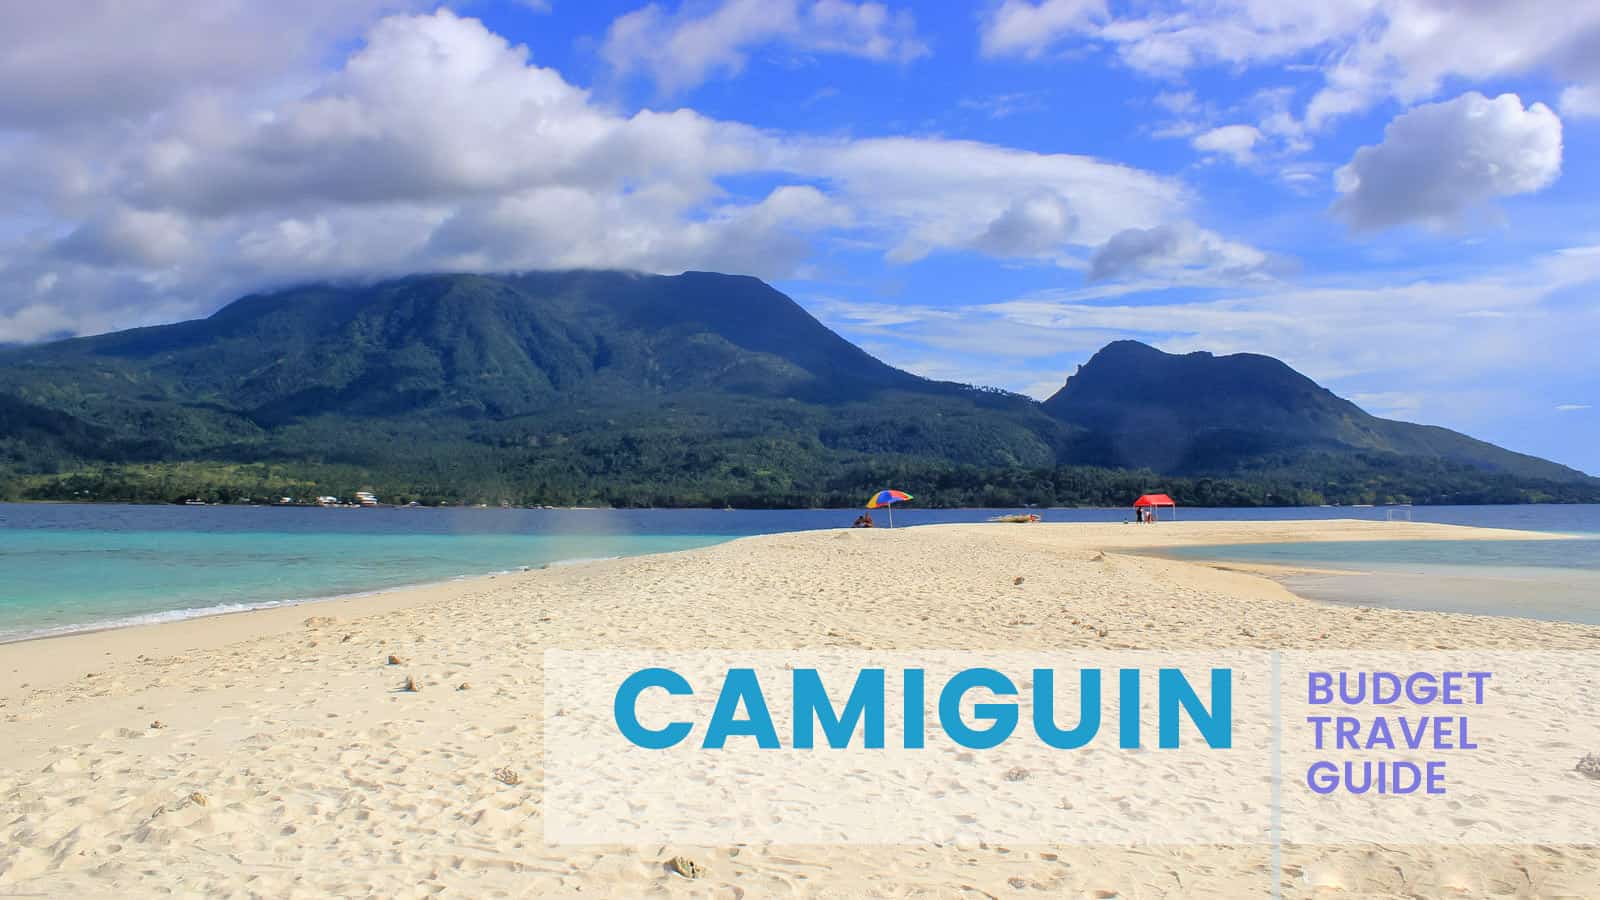 CAMIGUIN: Budget Travel Guide